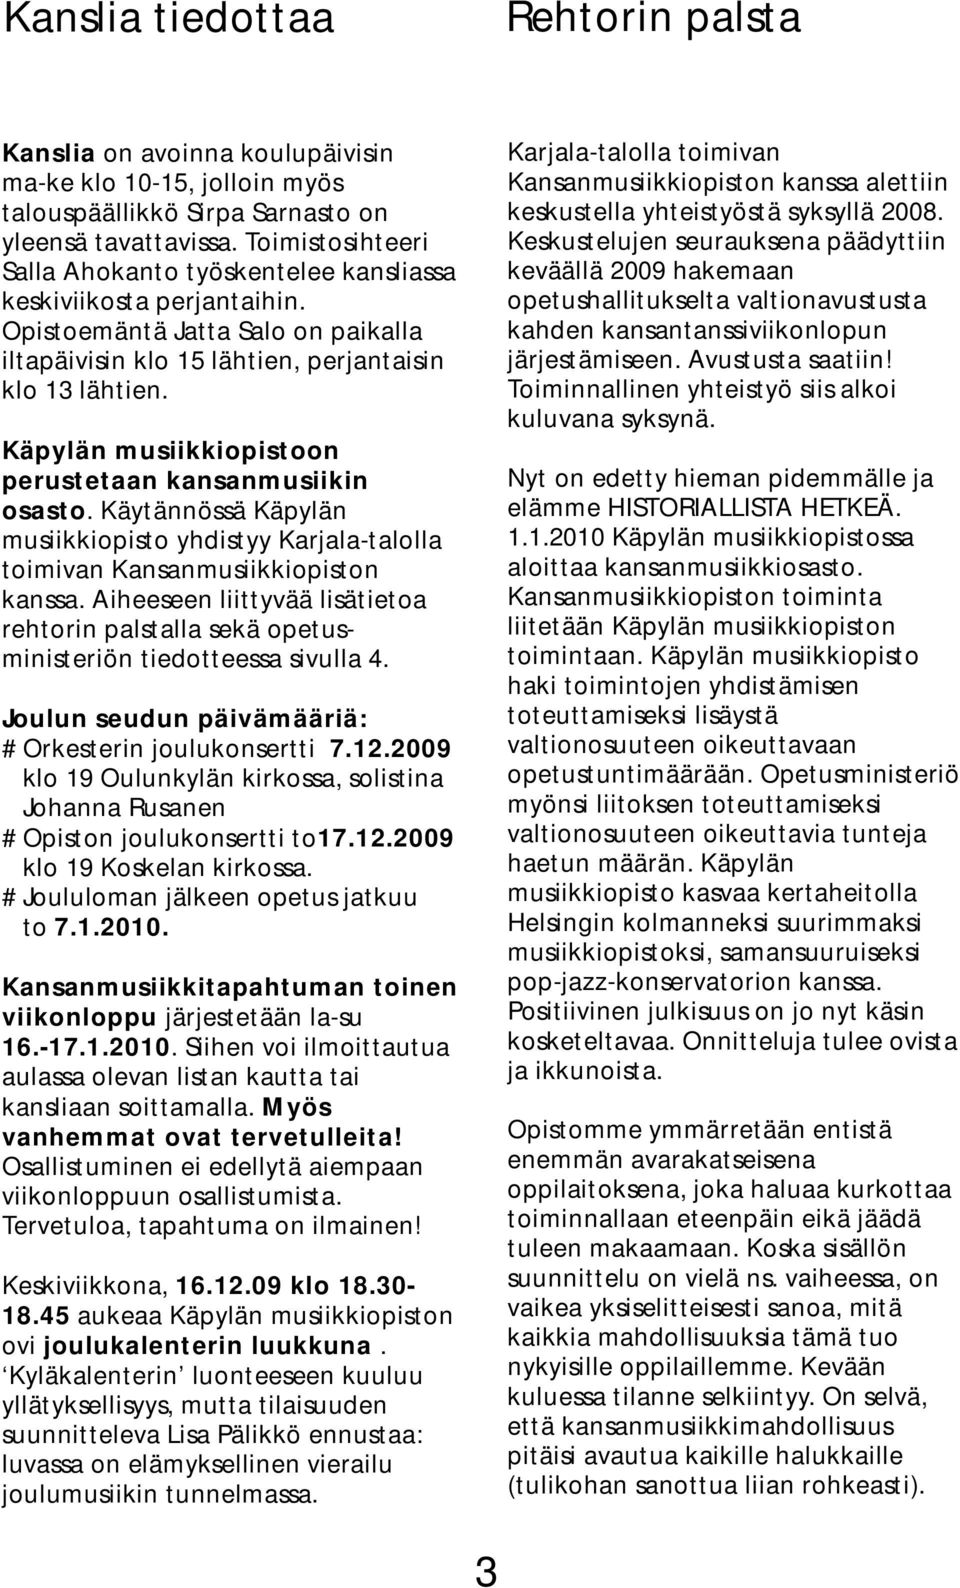 Käpylän musiikkiopistoon perustetaan kansanmusiikin osasto. Käytännössä Käpylän musiikkiopisto yhdistyy Karjala-talolla toimivan Kansanmusiikkiopiston kanssa.